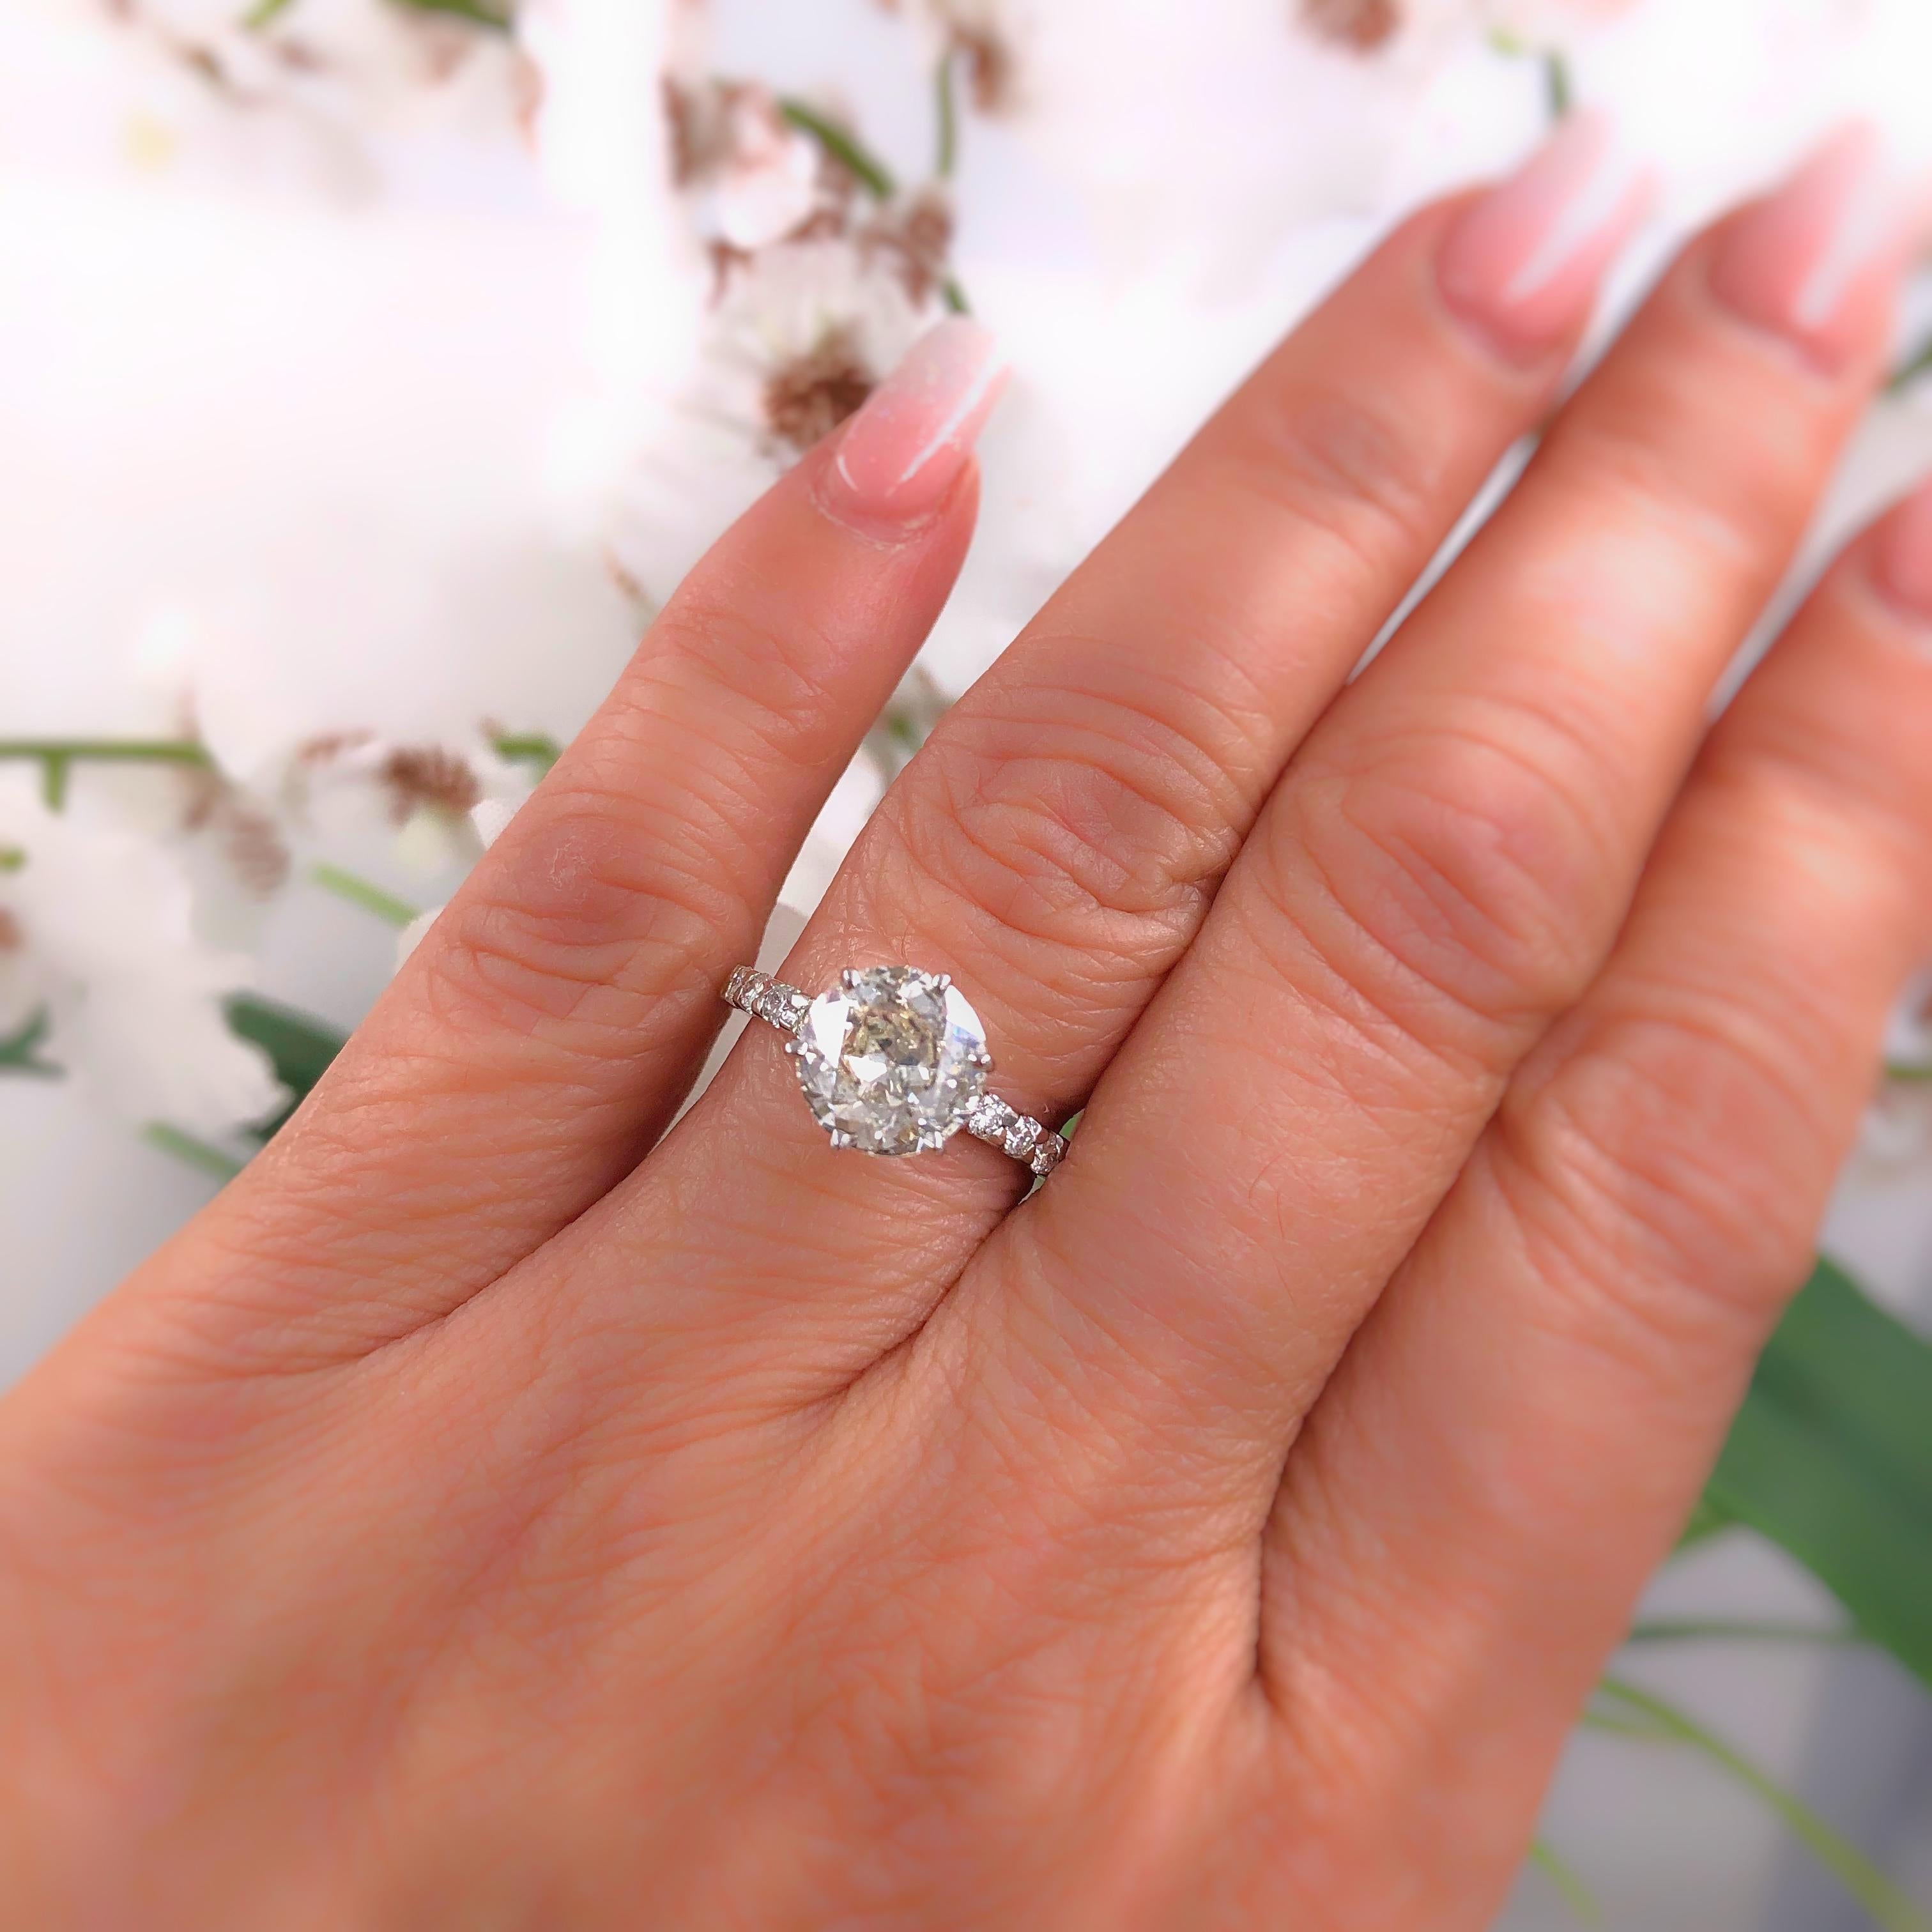 Women's Old Cut Diamond Engagement Ring 1.94 Carat Set in 14 Karat White Gold